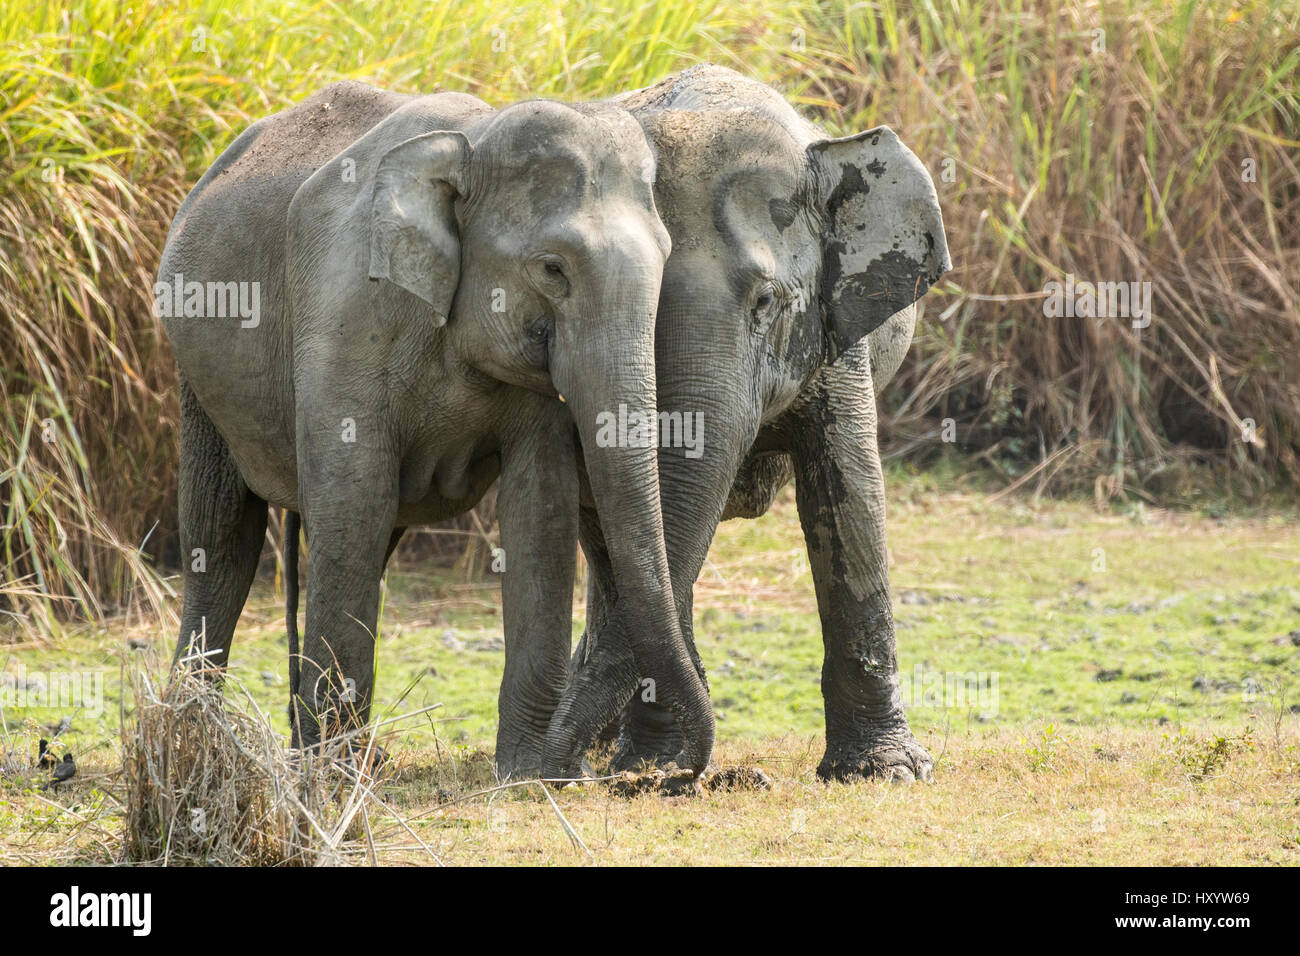 Asian elephants (Elephas maximus) greeting each other, Kaziranga National Park, Assam, India Stock Photo